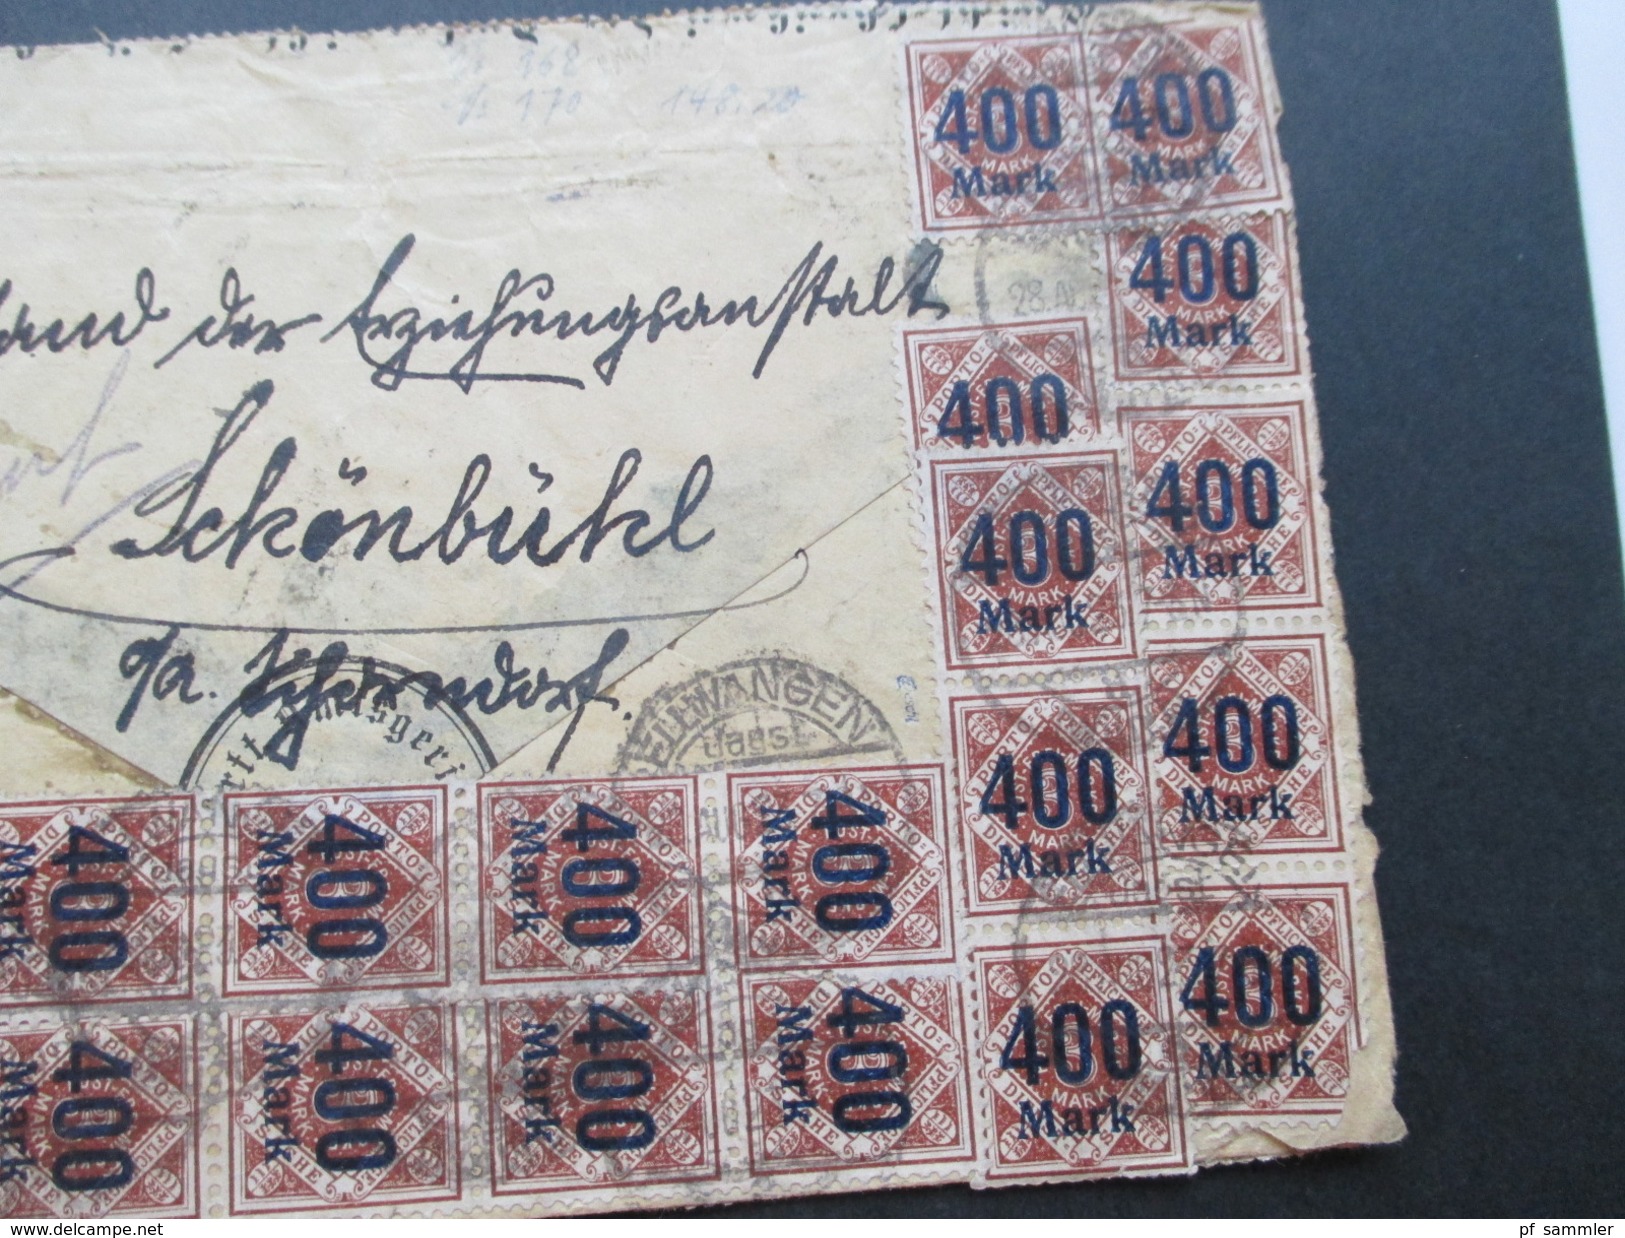 AD Württemberg 1923 Infla Massenfrankatur Nr. 168 u. 170 mit 81 Marken!! Infla geprüft!! Dienstpost